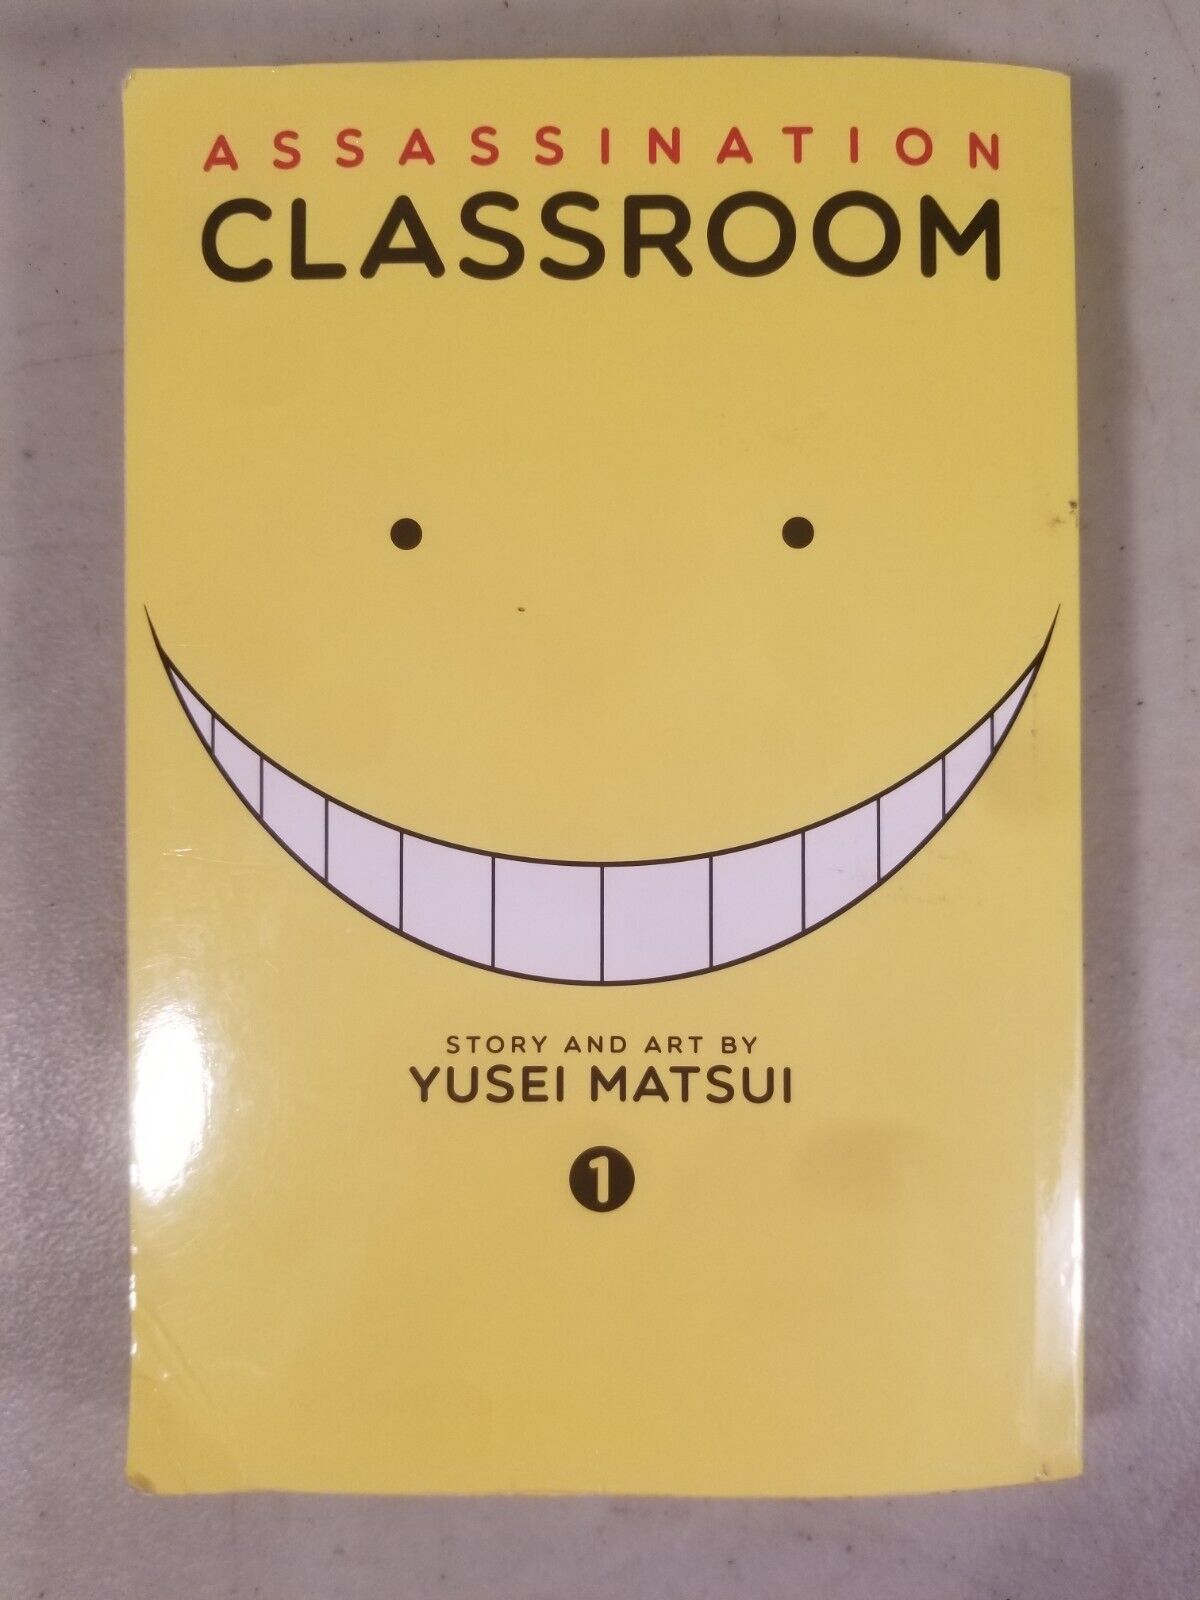 Assassination Classroom Vol. 1 Manga English By Yusei Matsui  